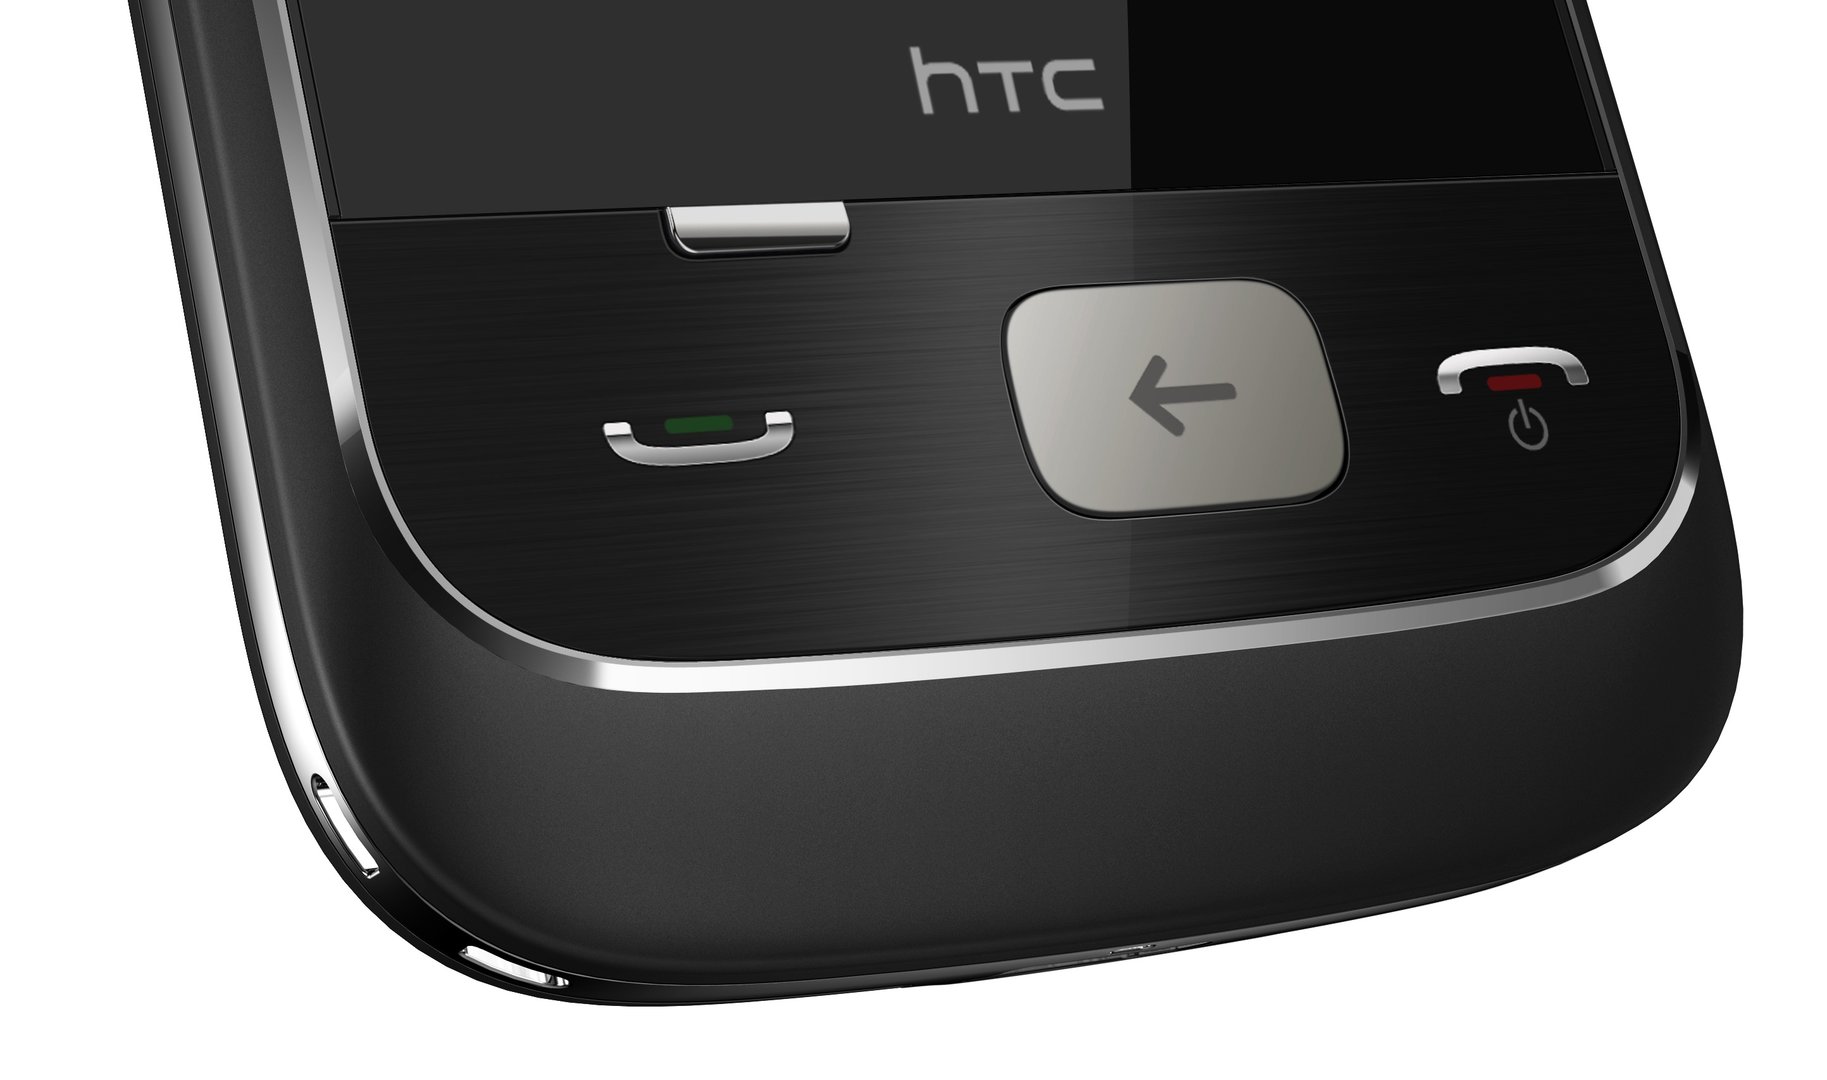 Knopfreihe beim HTC Smart